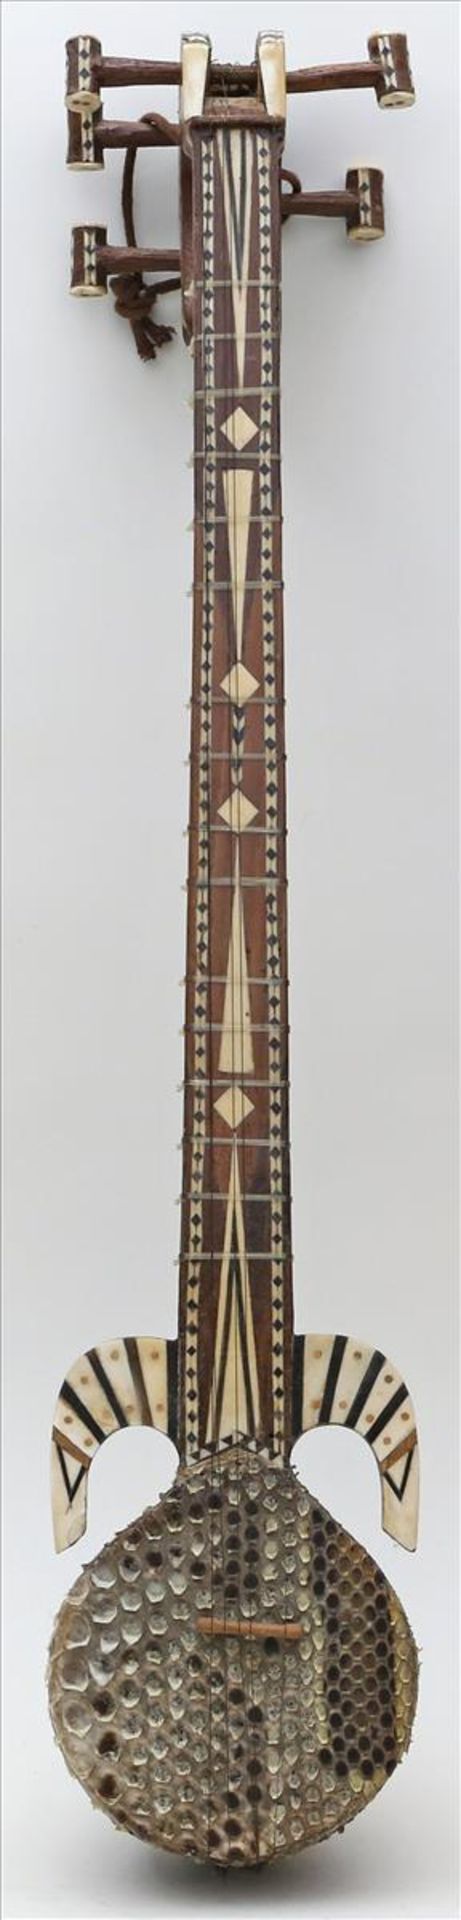 Traditionelles Saiteninstrument, so genannte "Rubab" bzw. "Rubob".Holzkorpus mit Dekoreinlagen, am